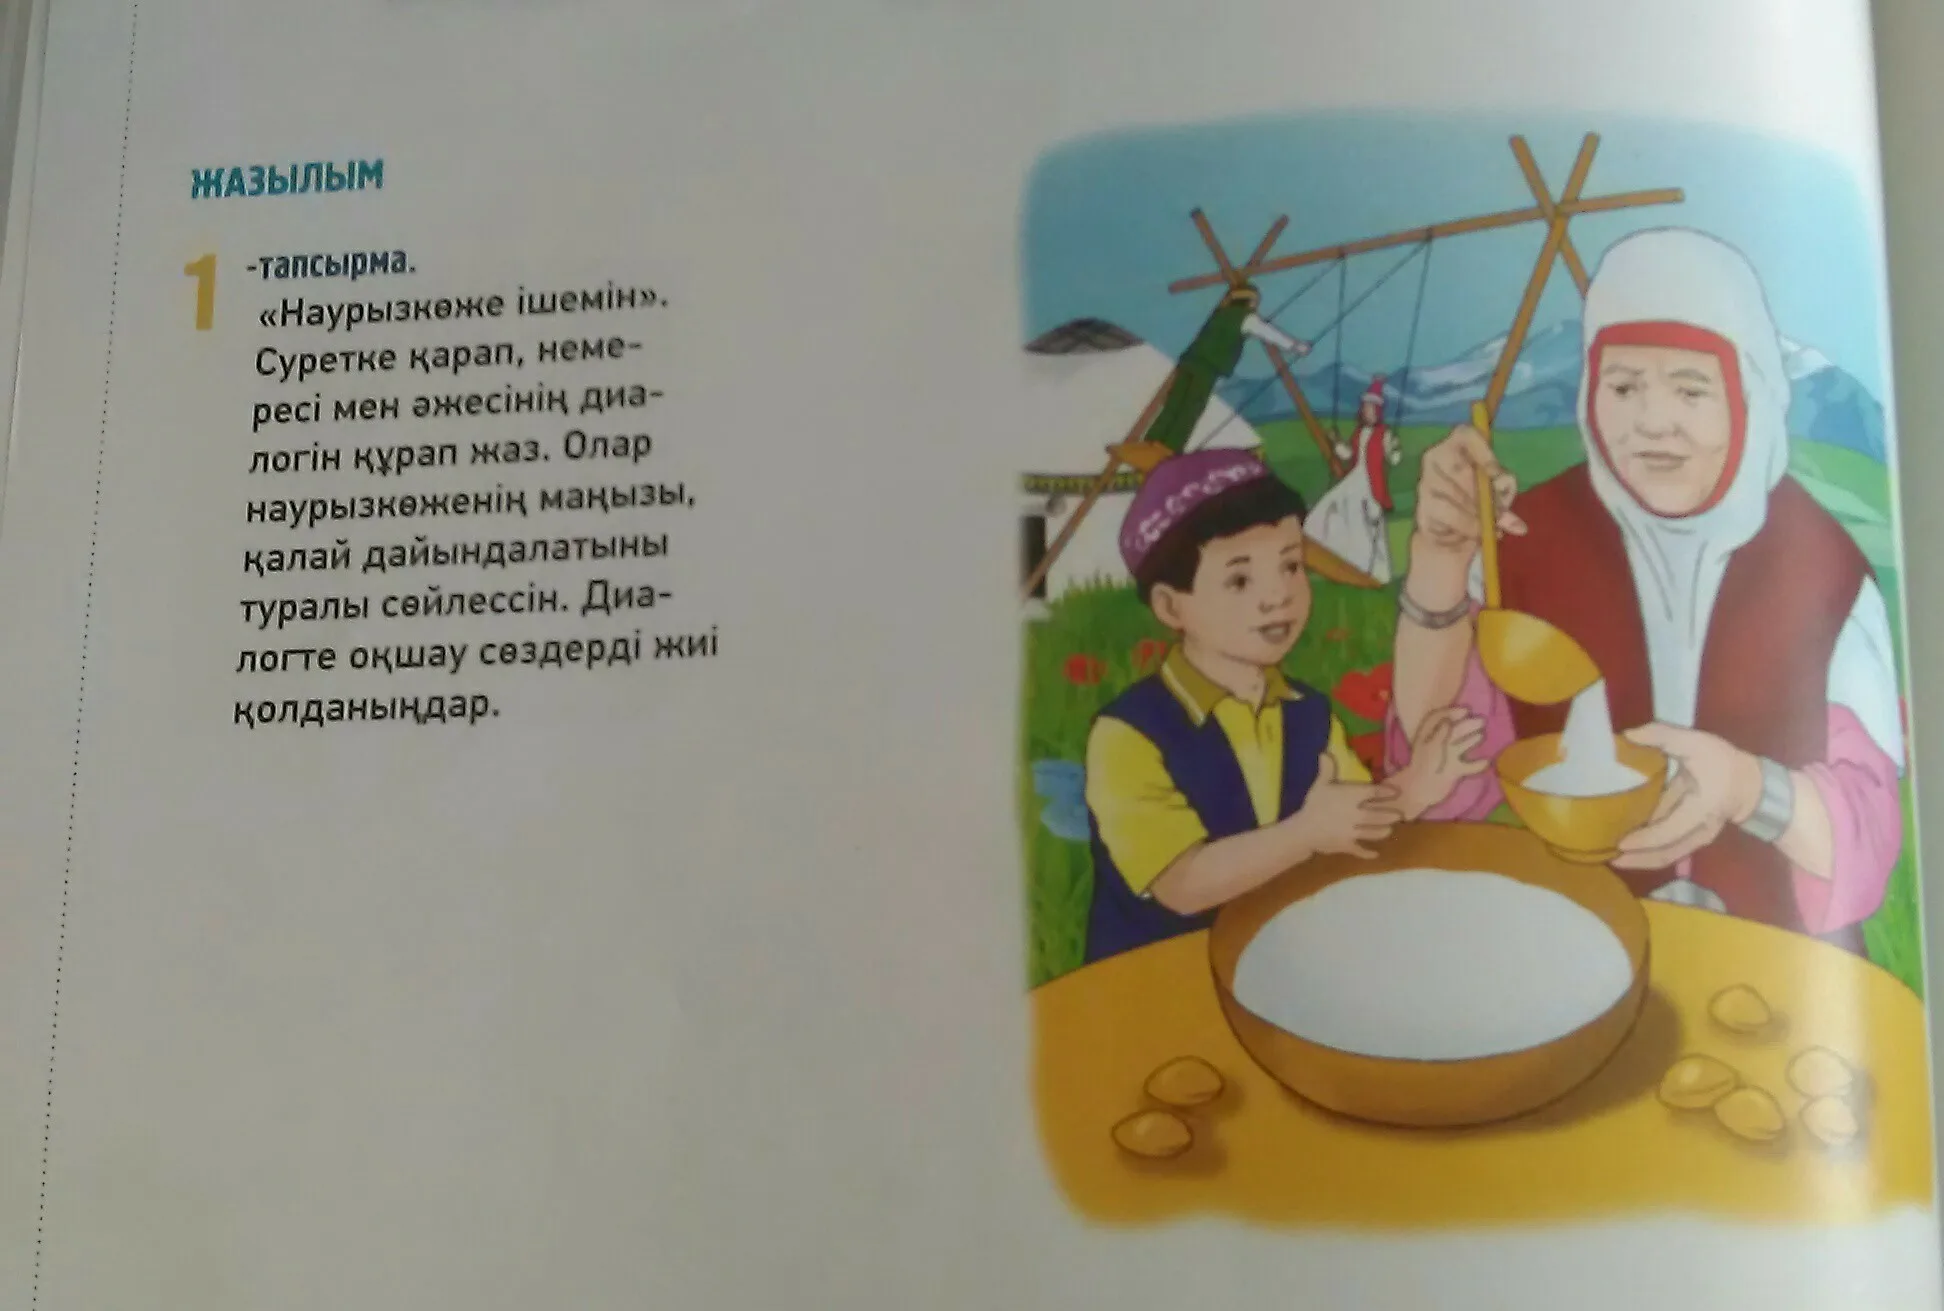 Стихи на казахском. Стихи про Наурыз. Стихи на Наурыз на казахском языке. Детские стихи про Наурыз. Стихотворение про наурыз